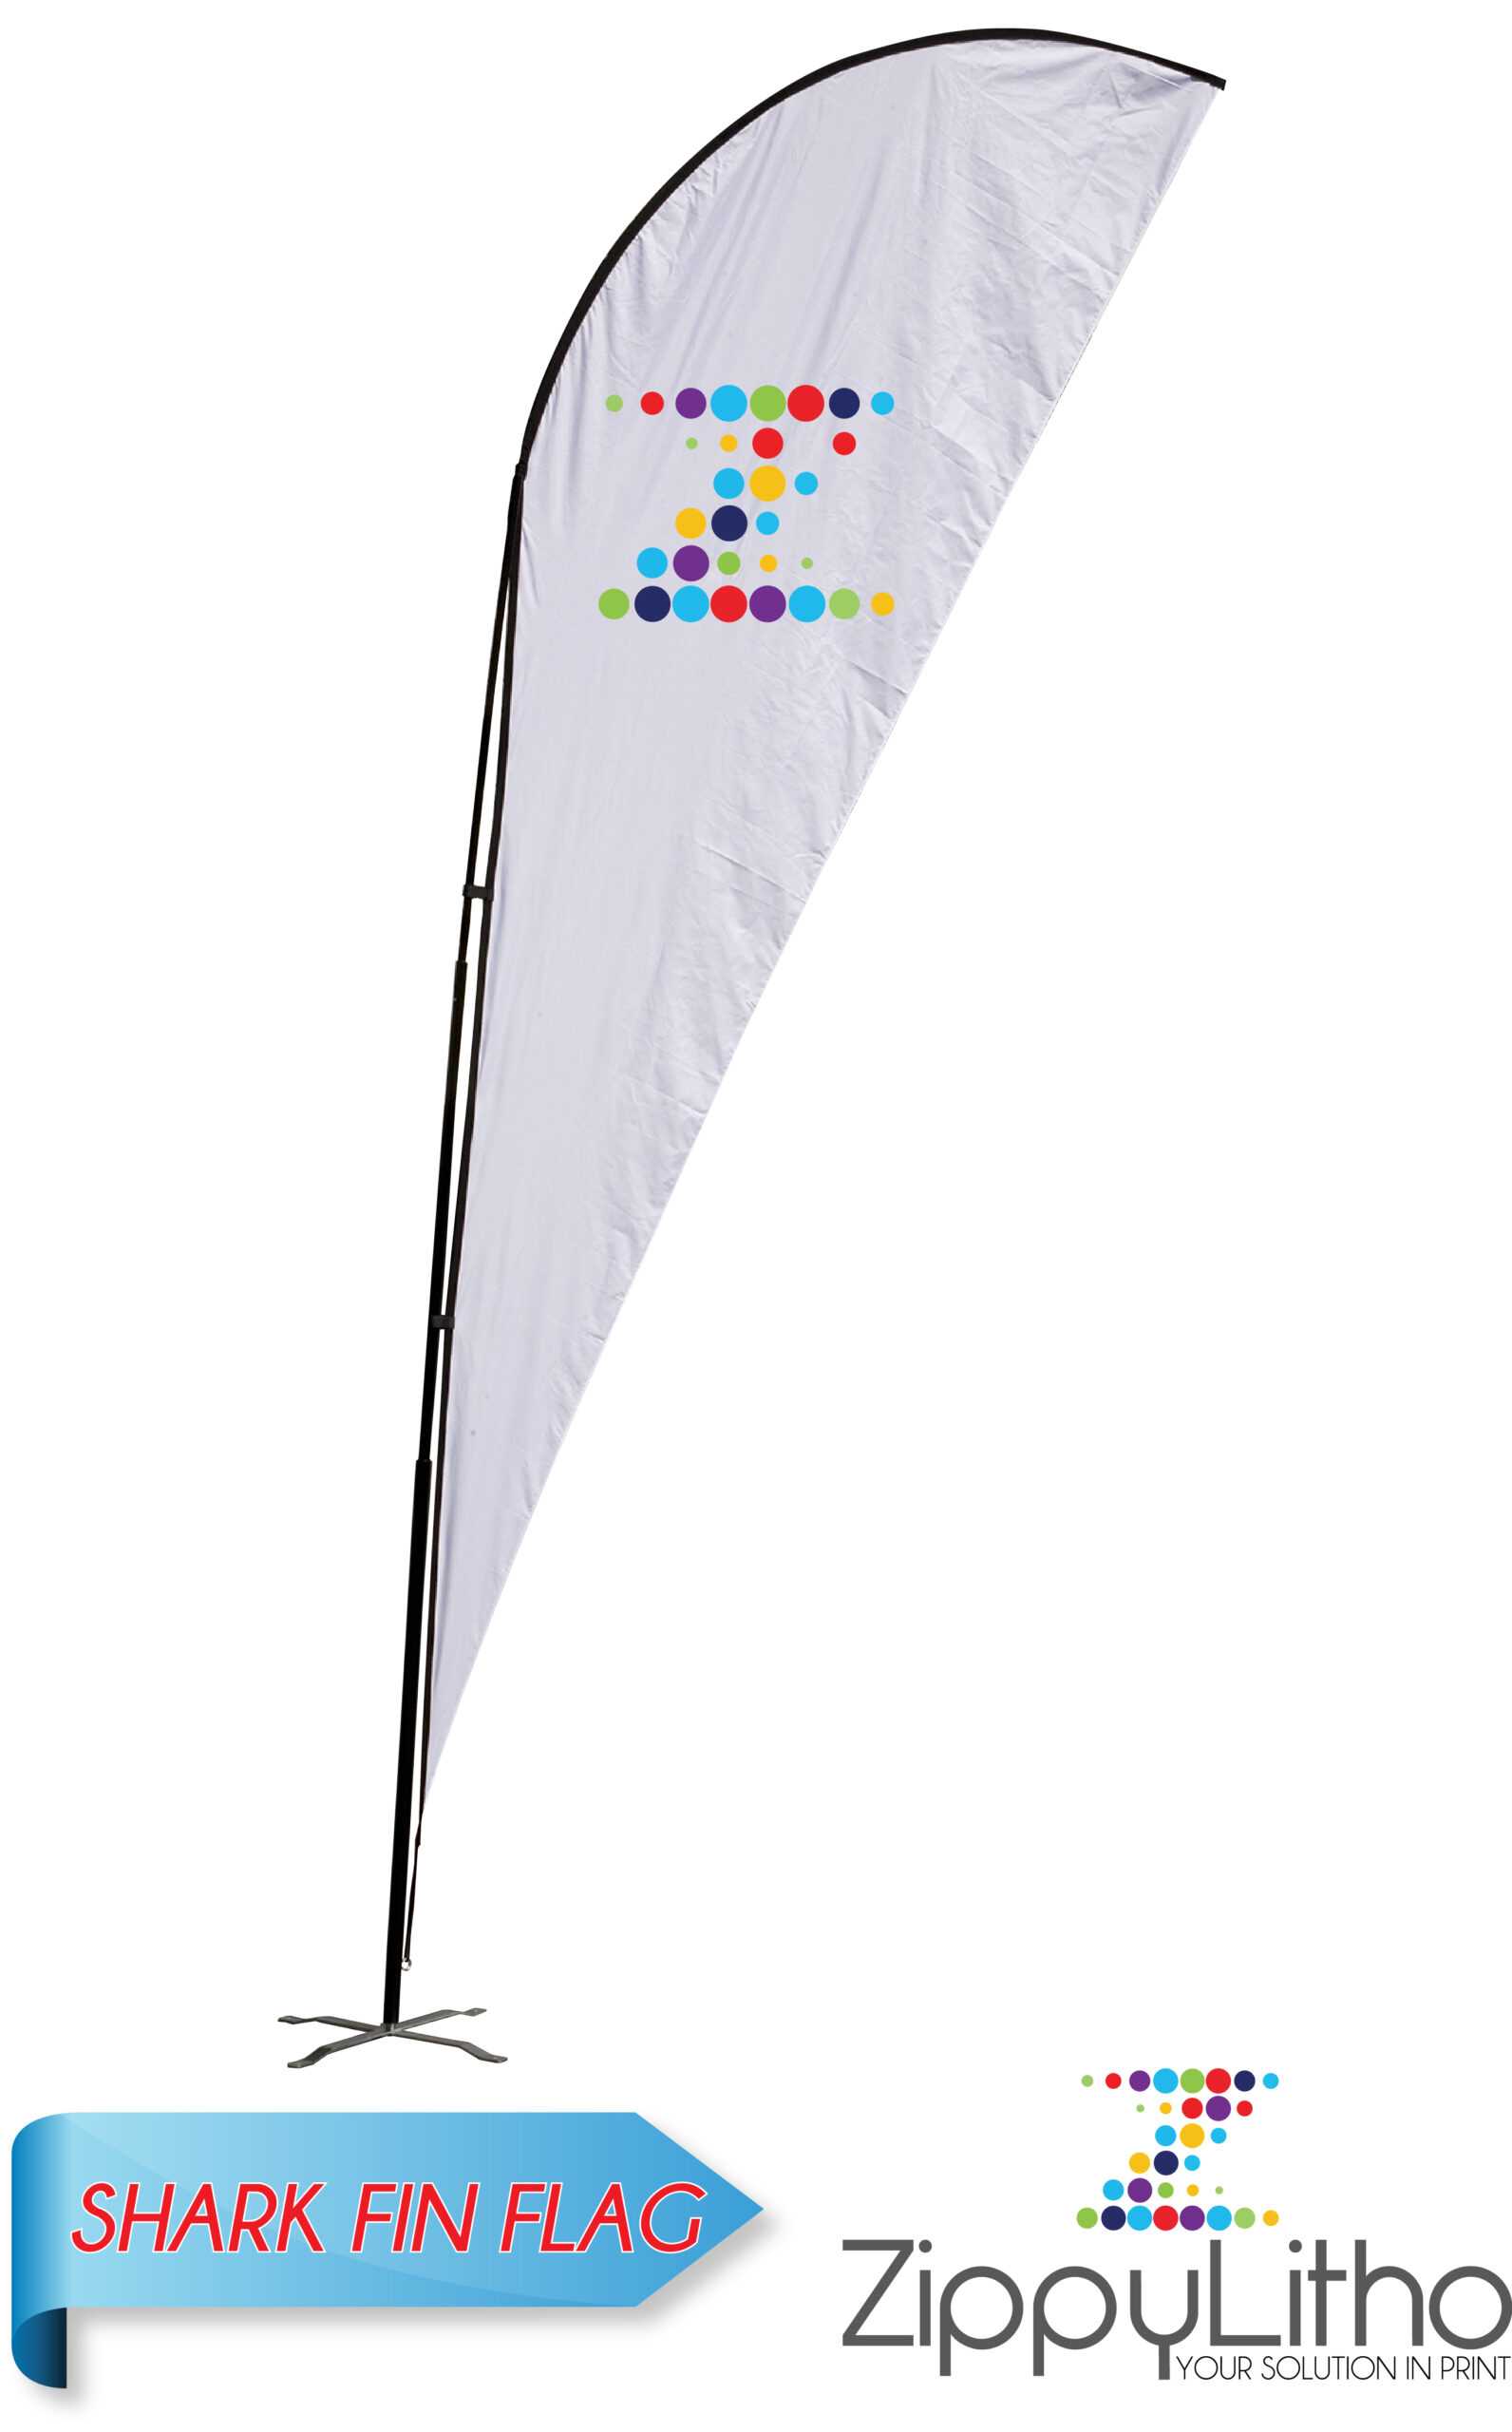 Shark Fin Flag | Zippy Litho Intended For Sharkfin Banner Template